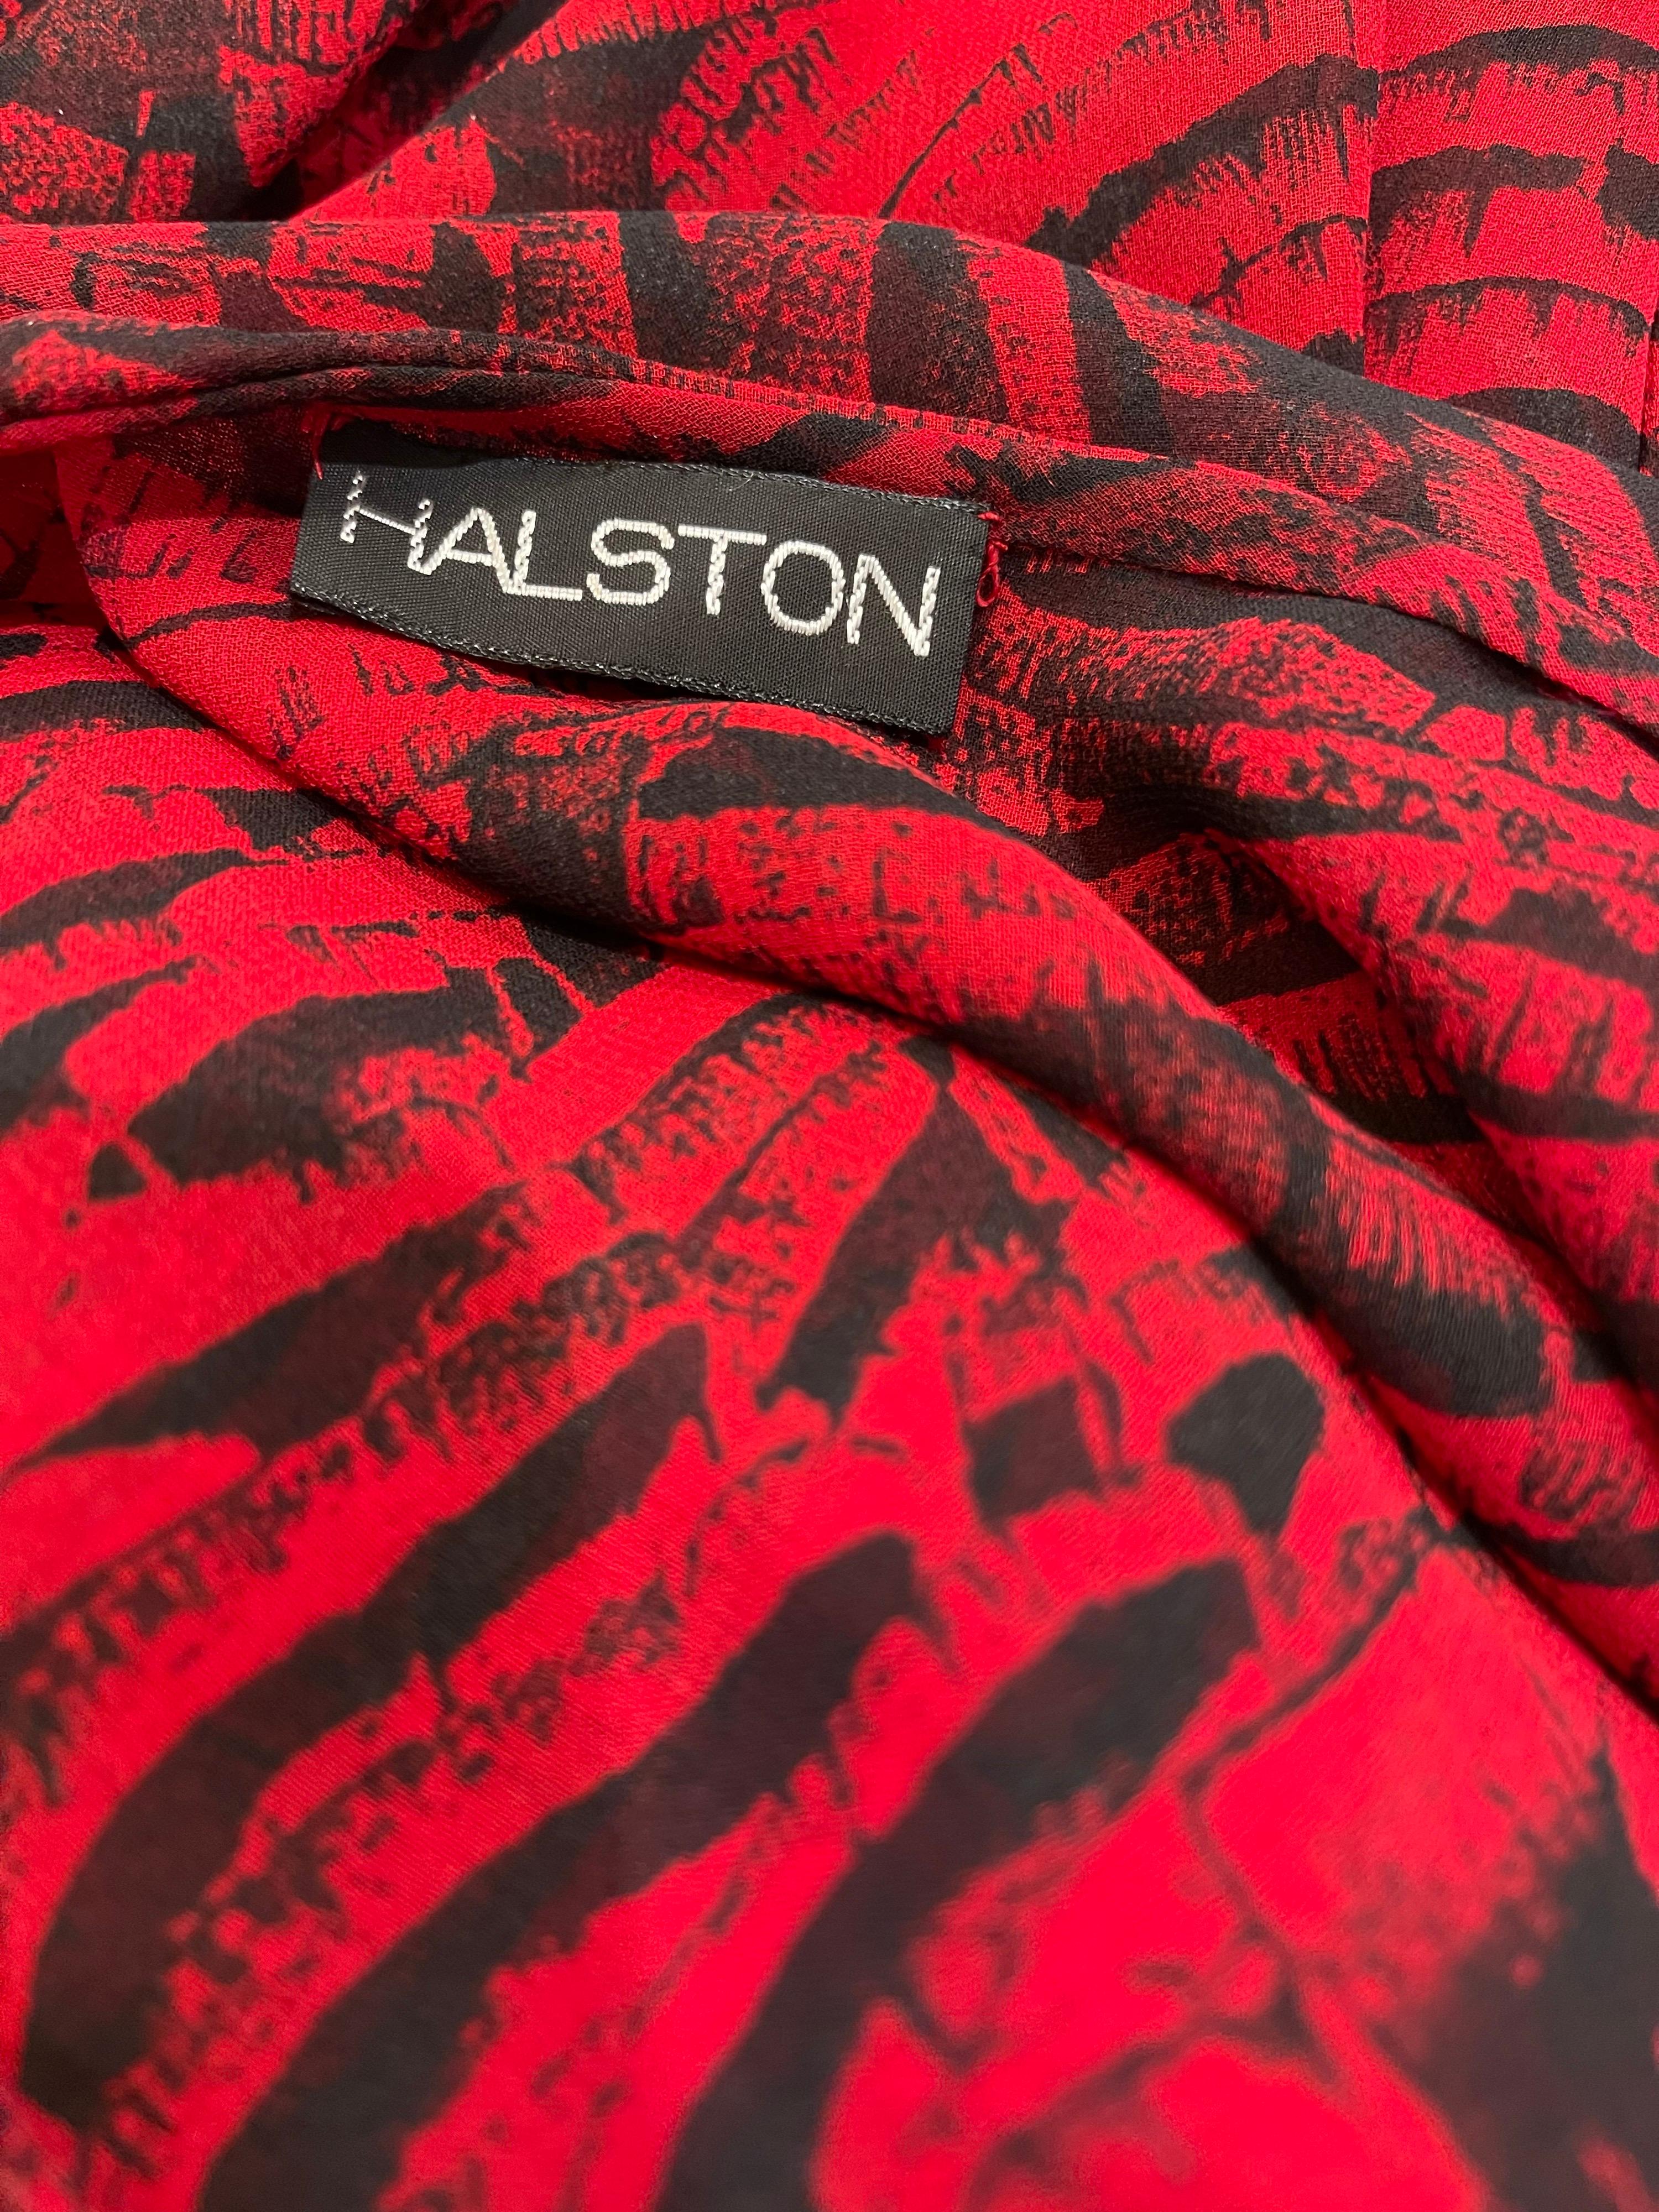 Fabulous Vintage 70s HALSTON Couture rot und schwarz abstrakte Tierdruck Chiffon dreiteilige Kleid Ensemble! Das Unterkleid besteht aus zwei Lagen halbtransparentem Chiffon und nackten Seidenriemen. Das Überkleid hat einen Haken- und Ösenverschluss